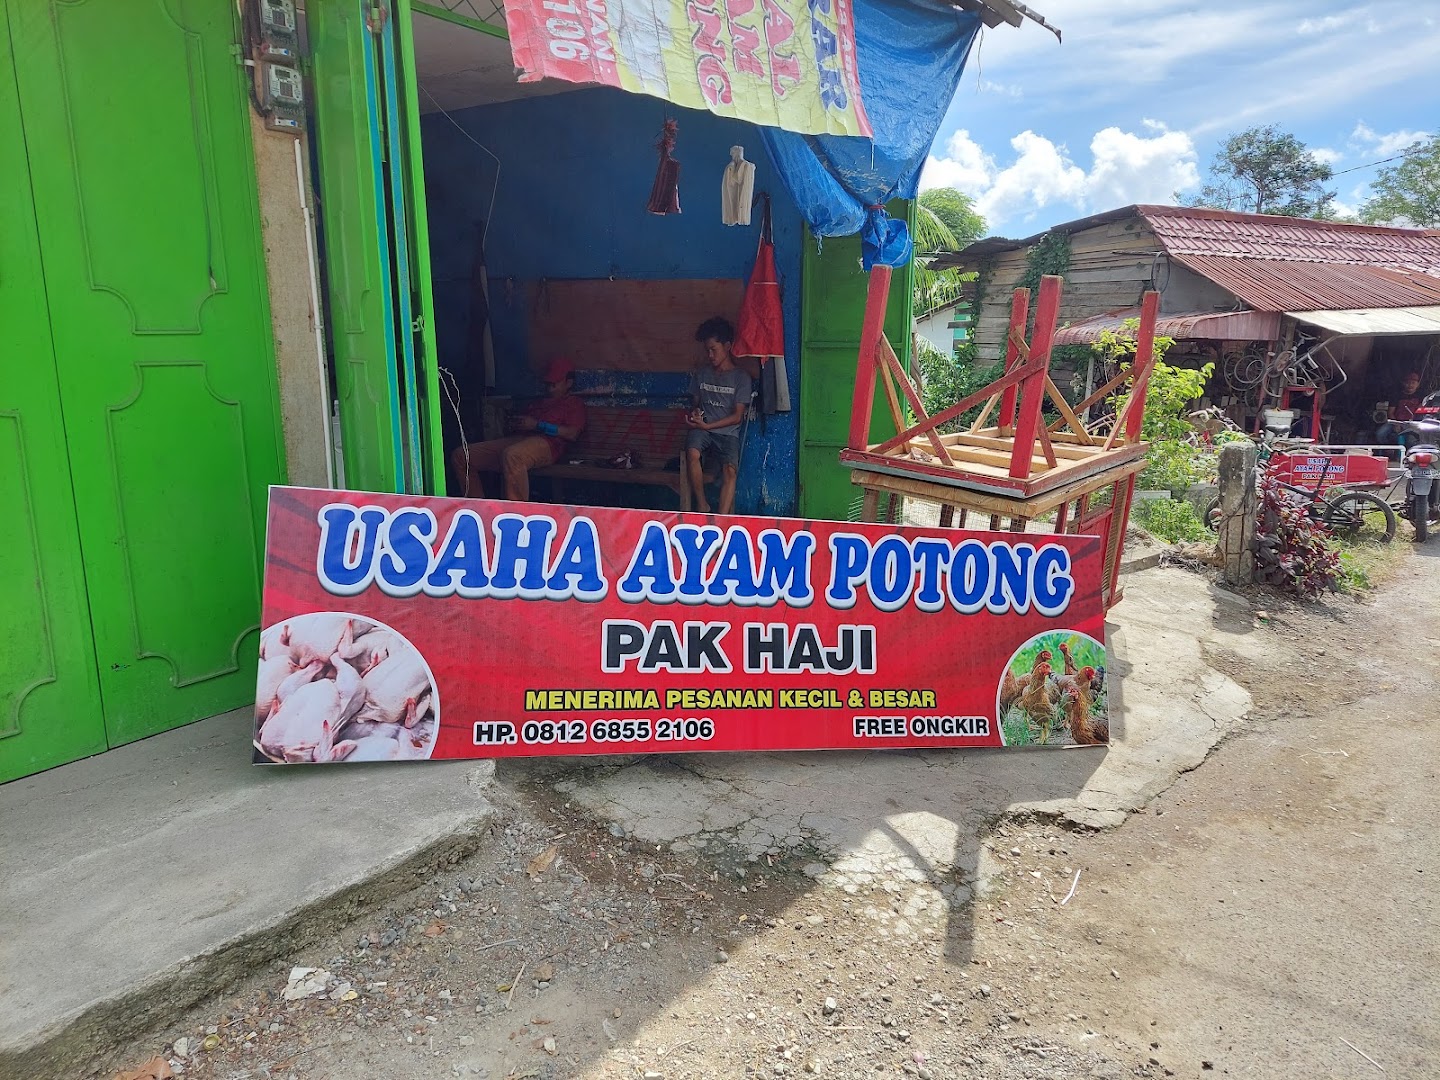 Usaha Ayam Potong Pak Haji Photo